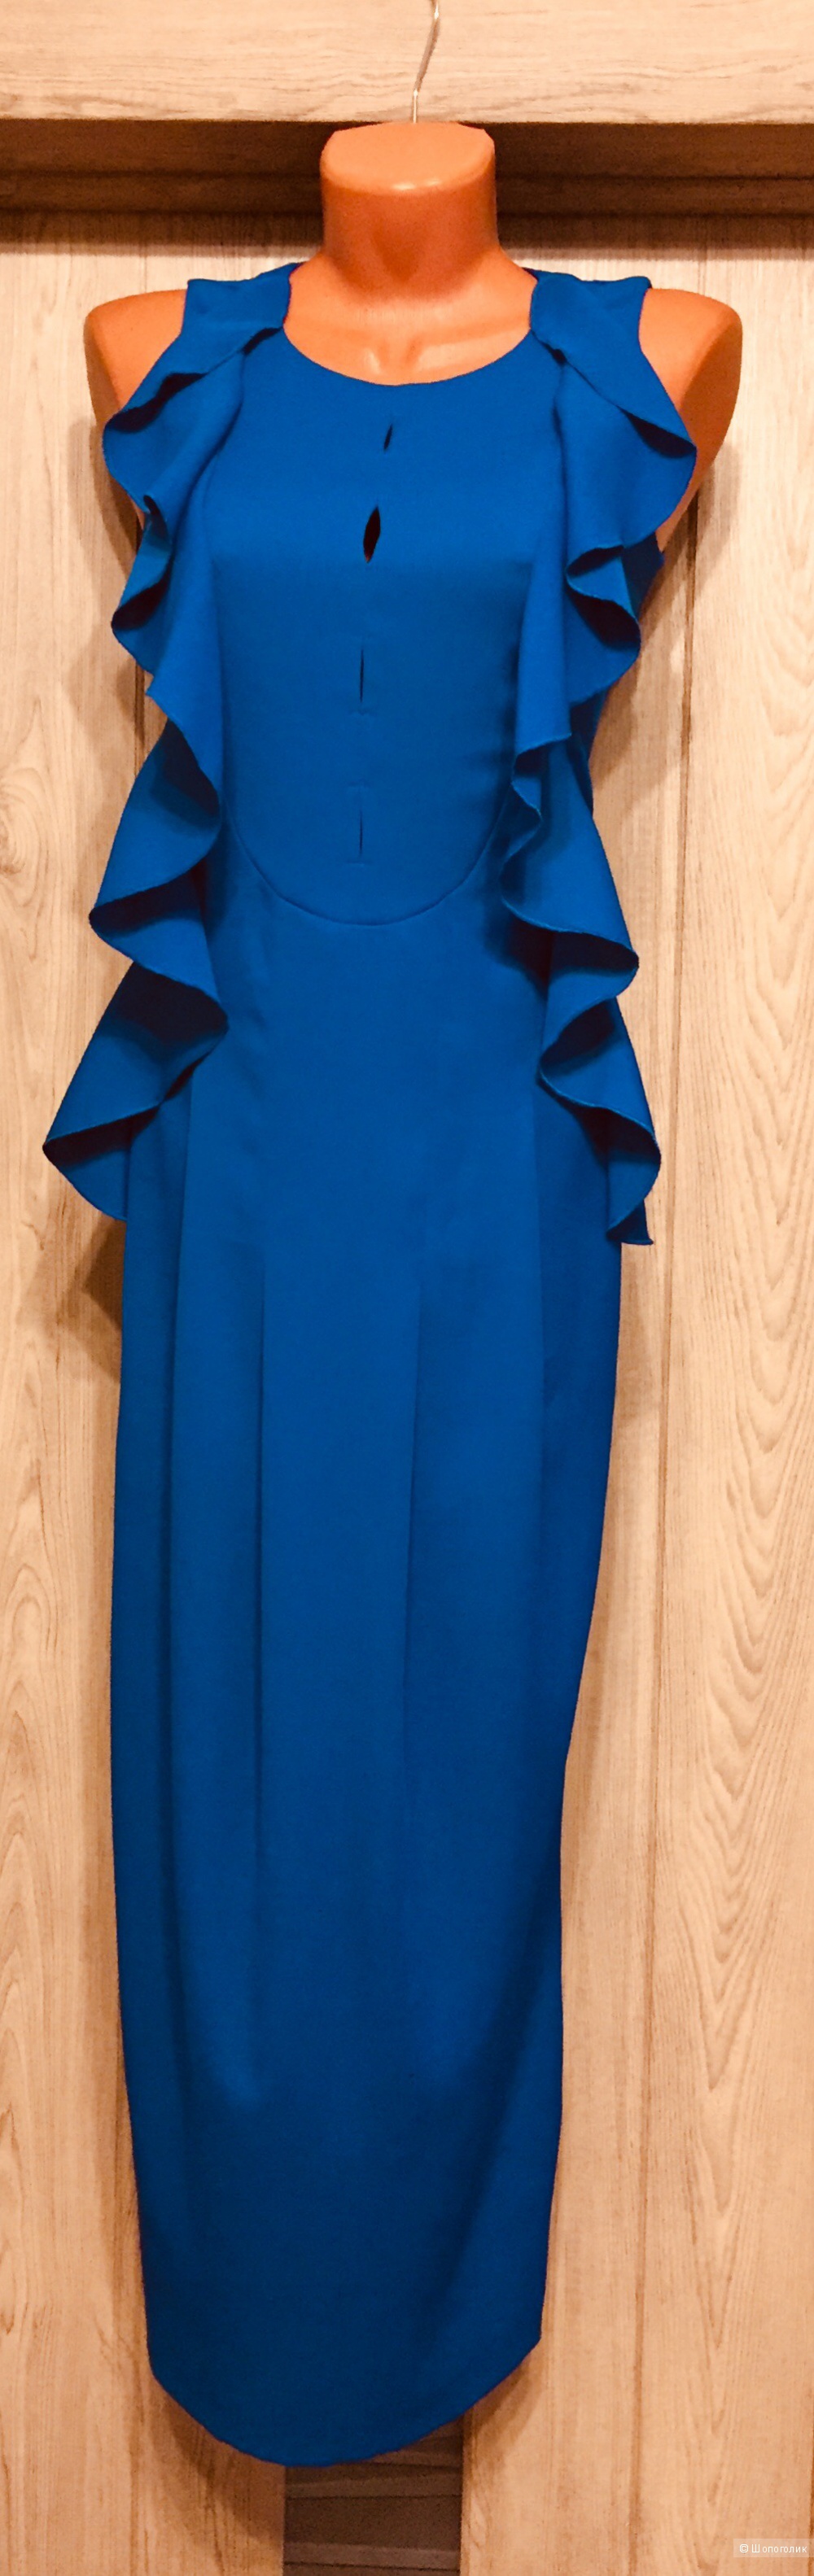 Платье Glance (Vova Gorshkov) 48 размер